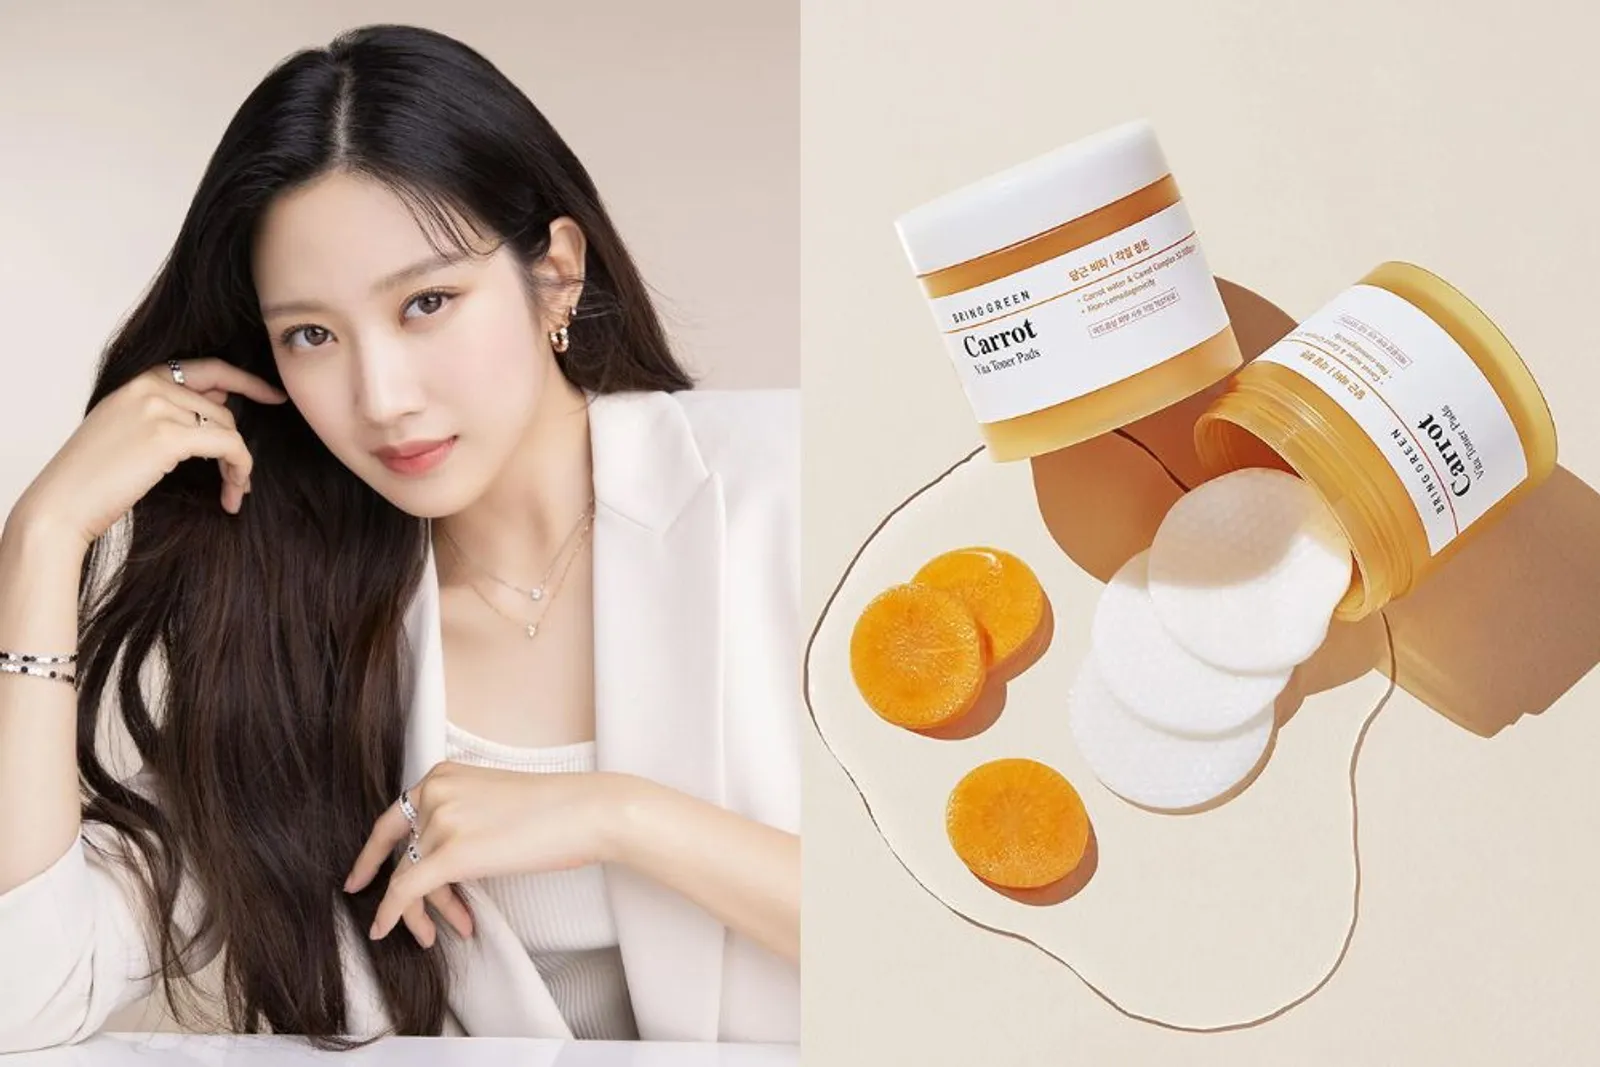 Ini Skincare yang Digunakan Aktris Drama Korea, Bikin Glowing!